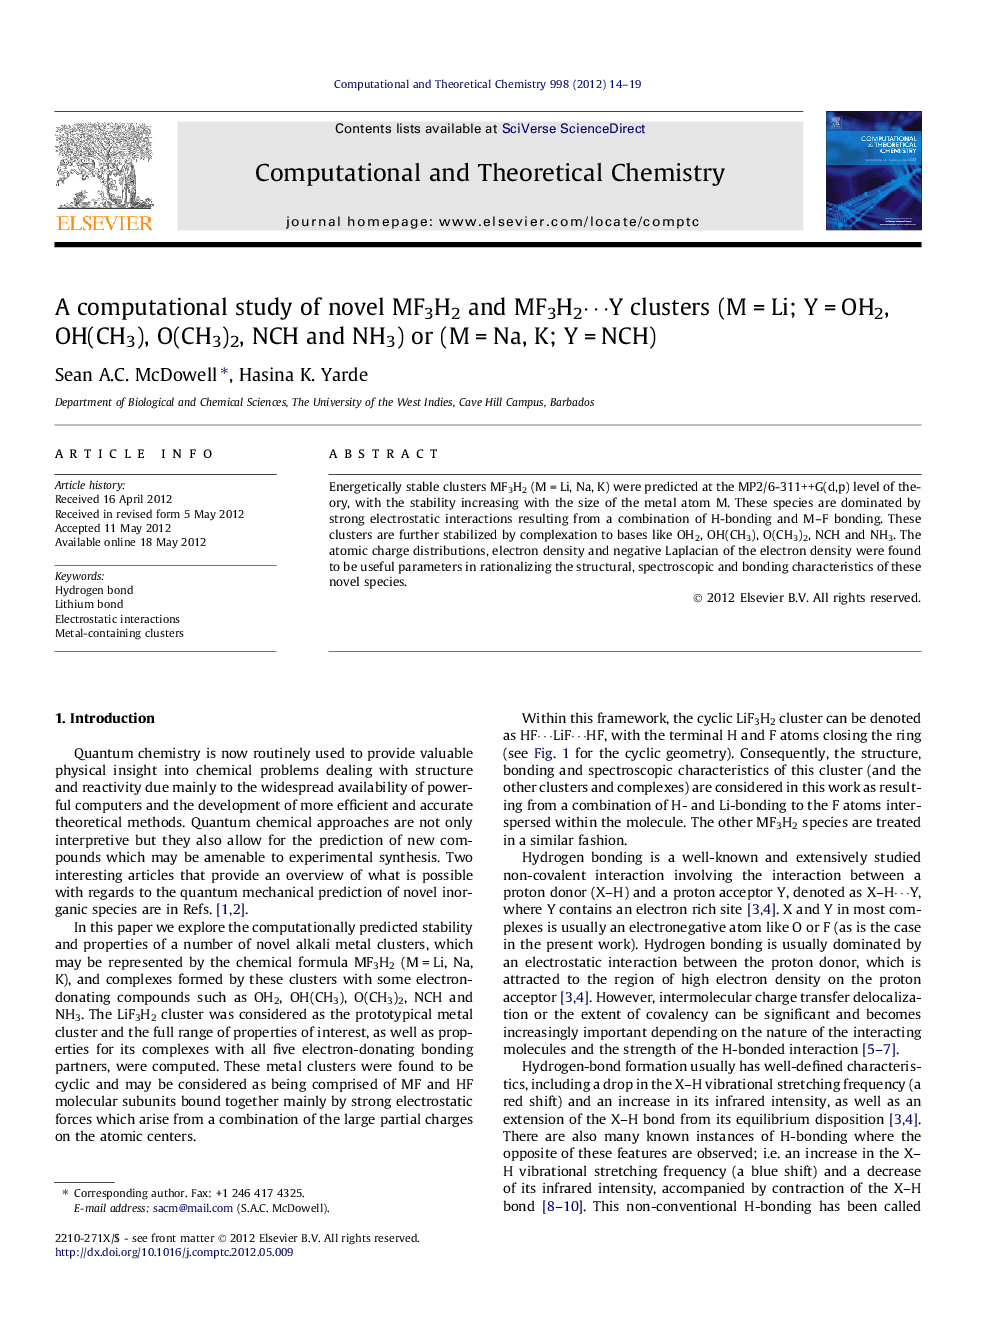 A computational study of novel MF3H2 and MF3H2â¯Y clusters (MÂ =Â Li; YÂ =Â OH2, OH(CH3), O(CH3)2, NCH and NH3) or (MÂ =Â Na, K; YÂ =Â NCH)